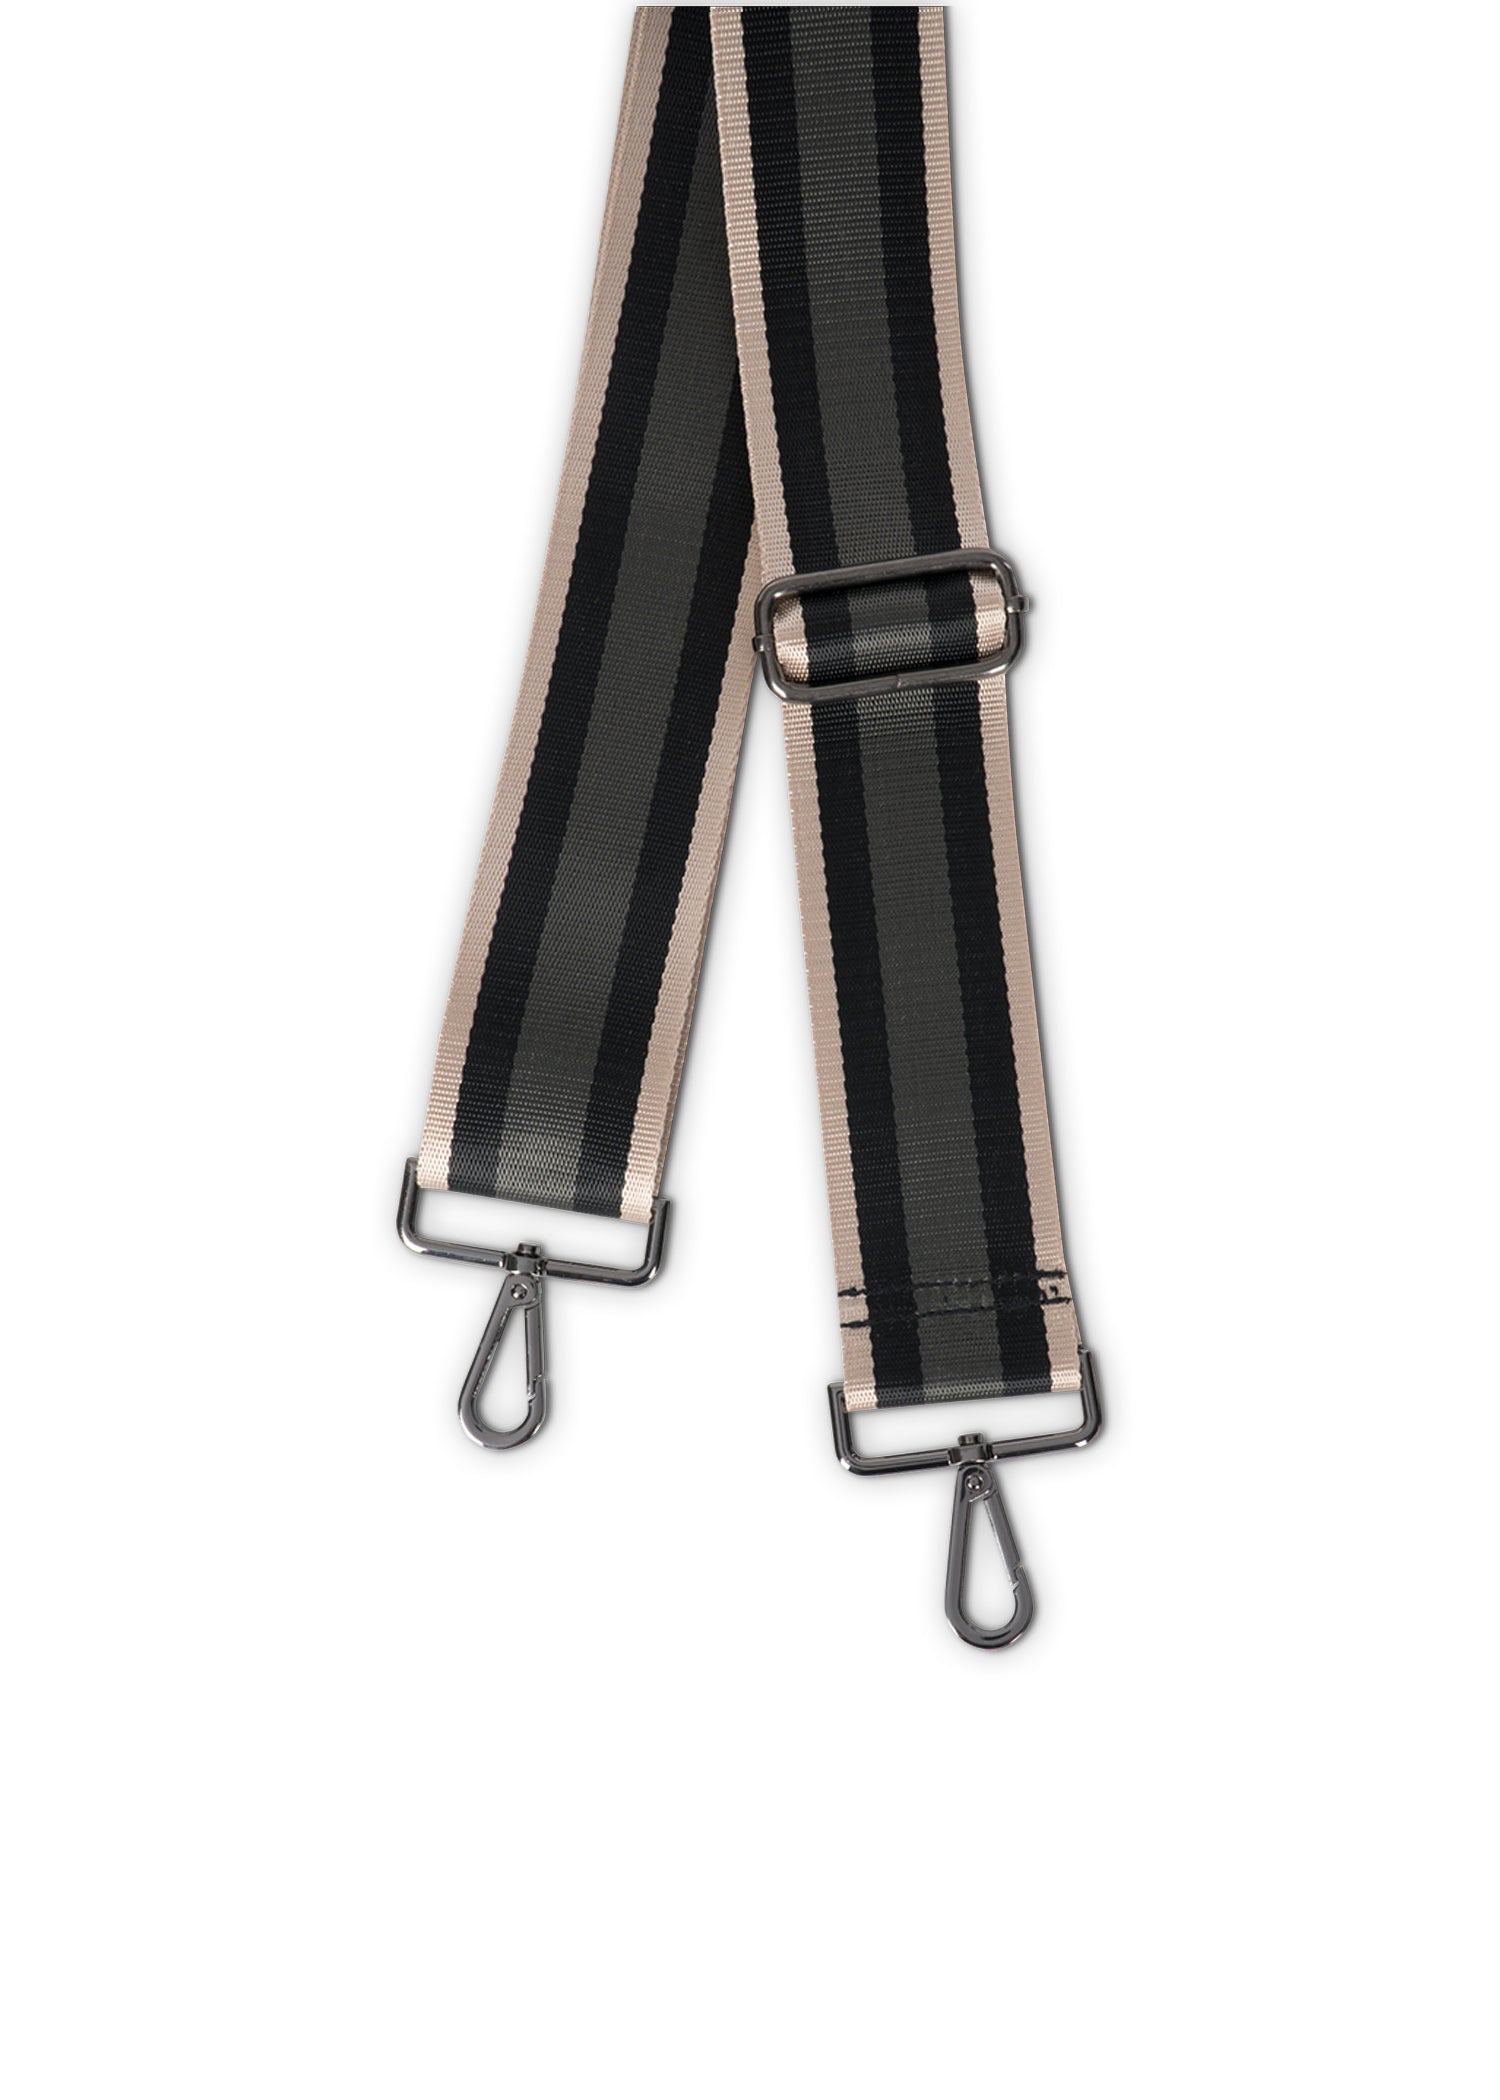 rose gold/black/charcoal handbag strap